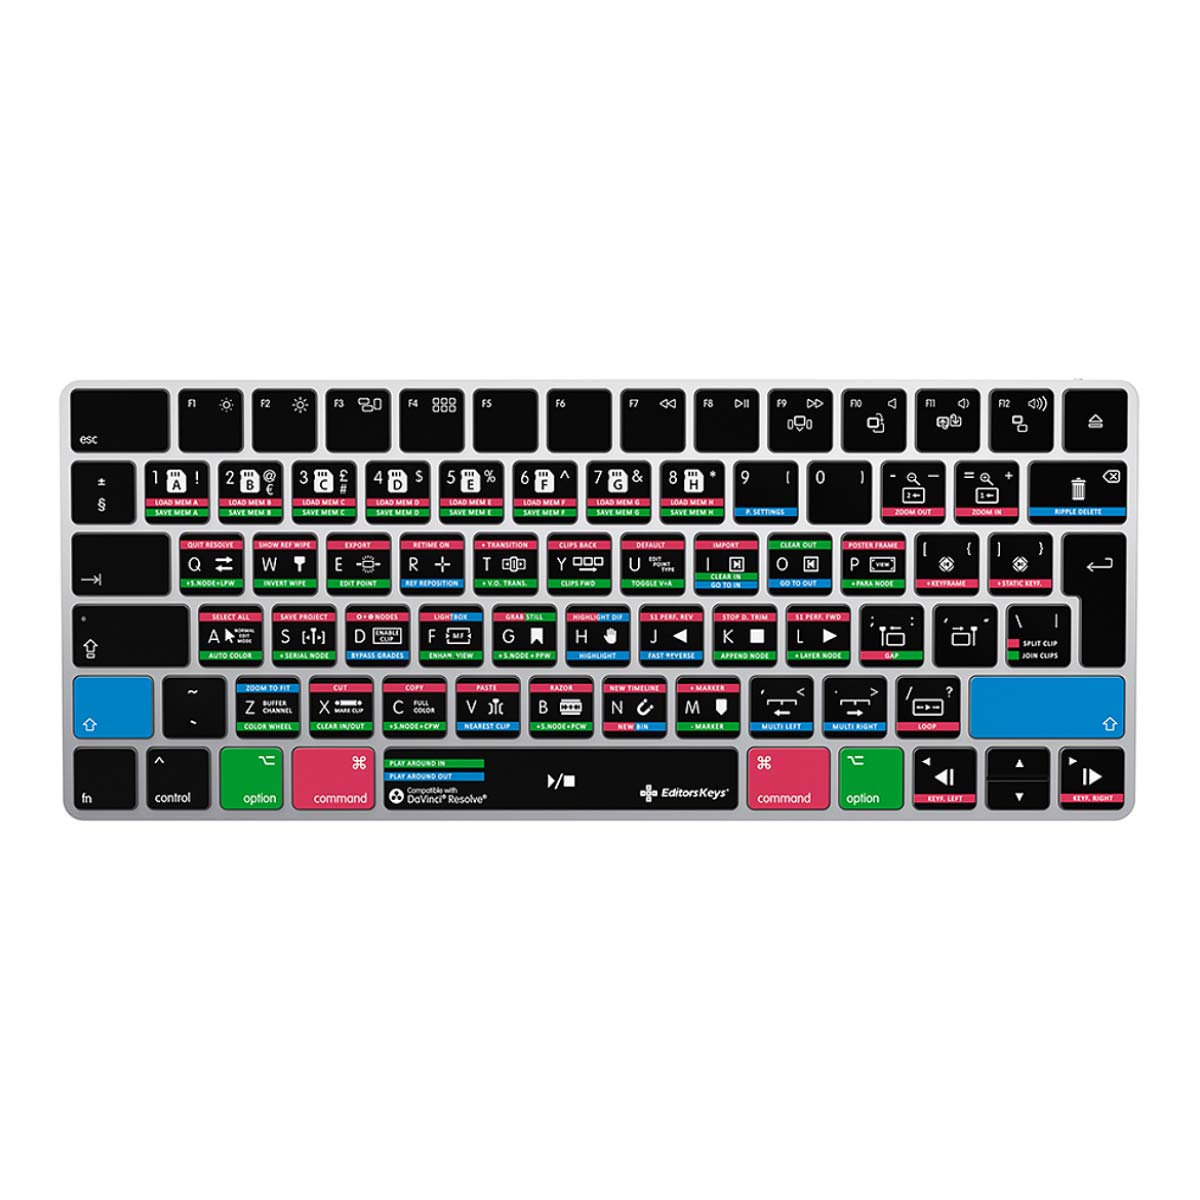 DaVinci Resolve Apple Magic Keyboard UK